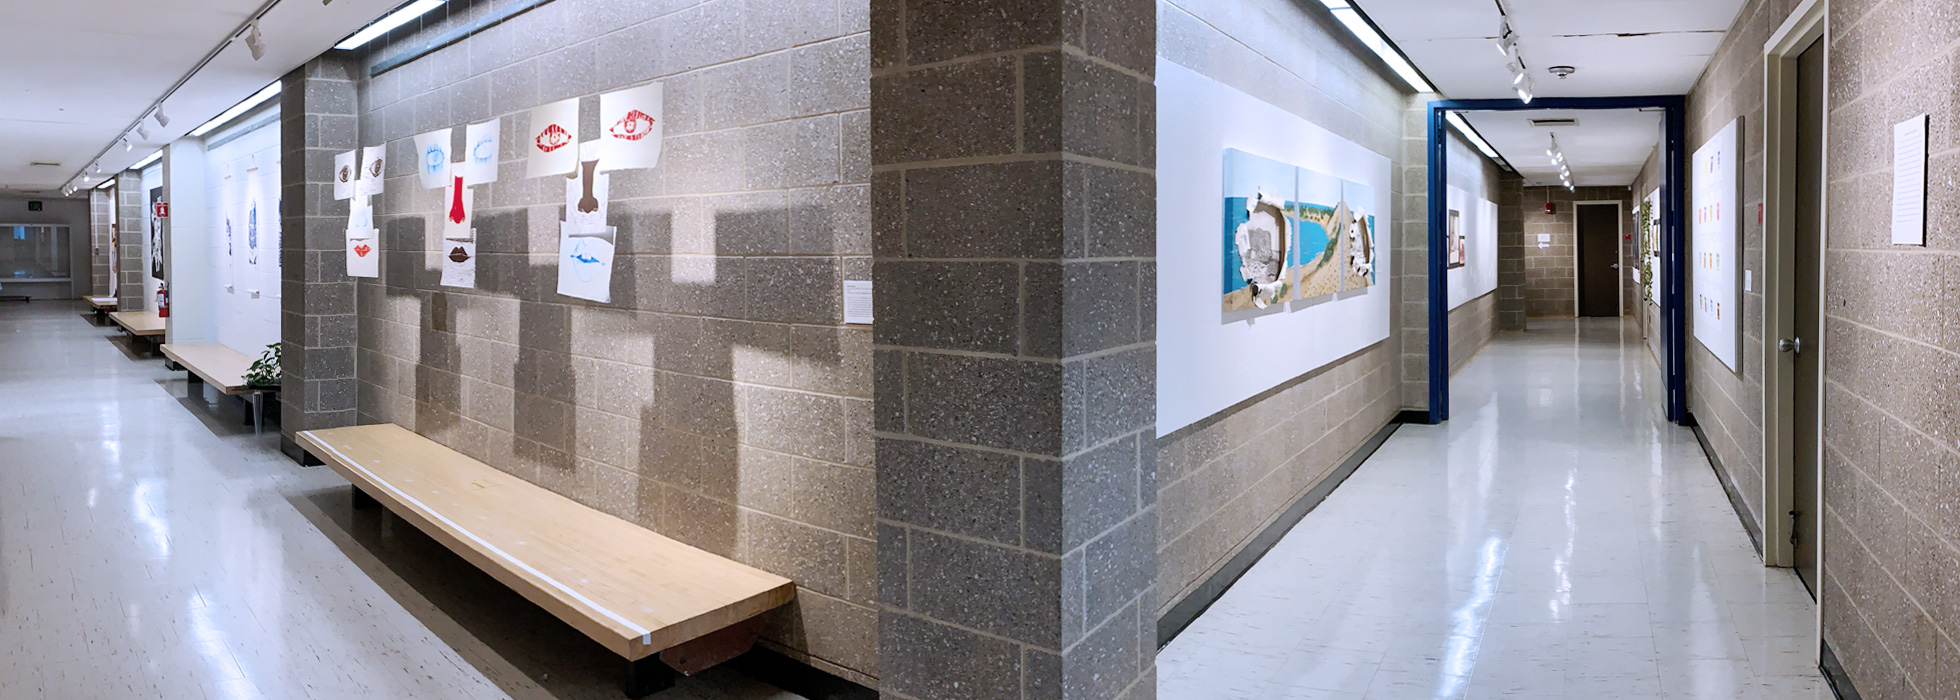 Art Department Gallery Hallway